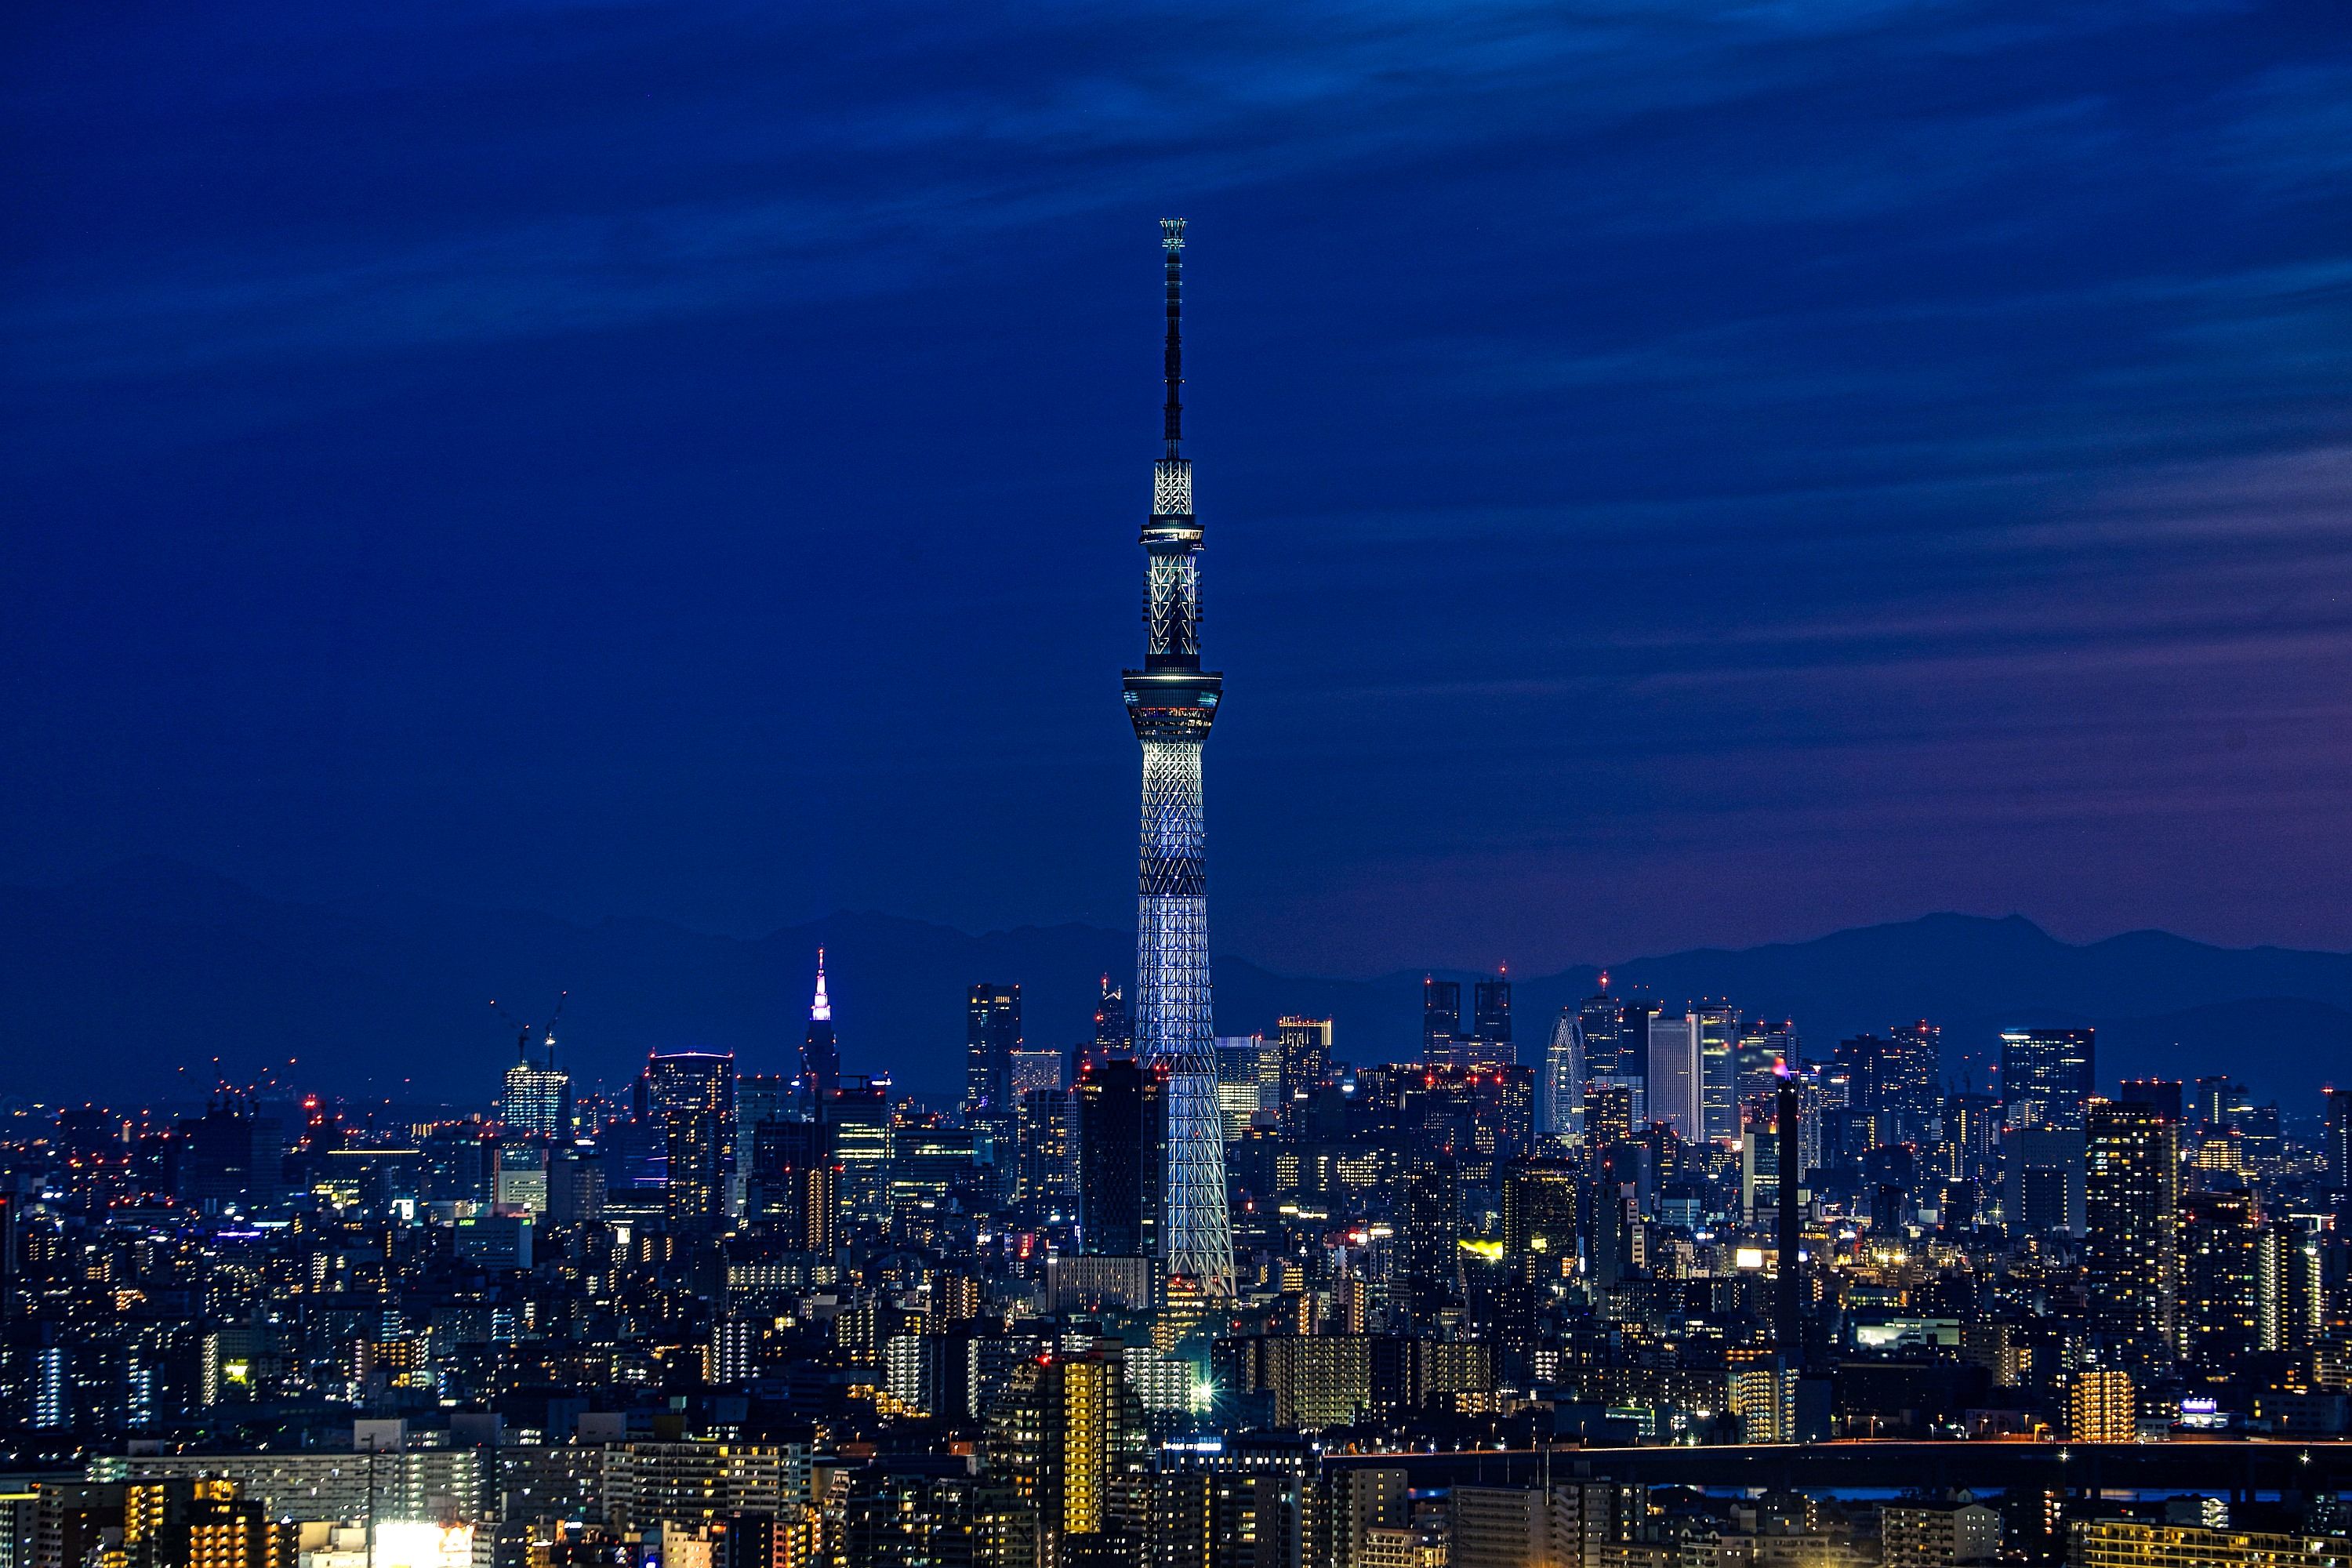 アイ リンクタウン展望施設から見た東京スカイツリー夜景 19年5月2日 東京スカイツリー定点観測所